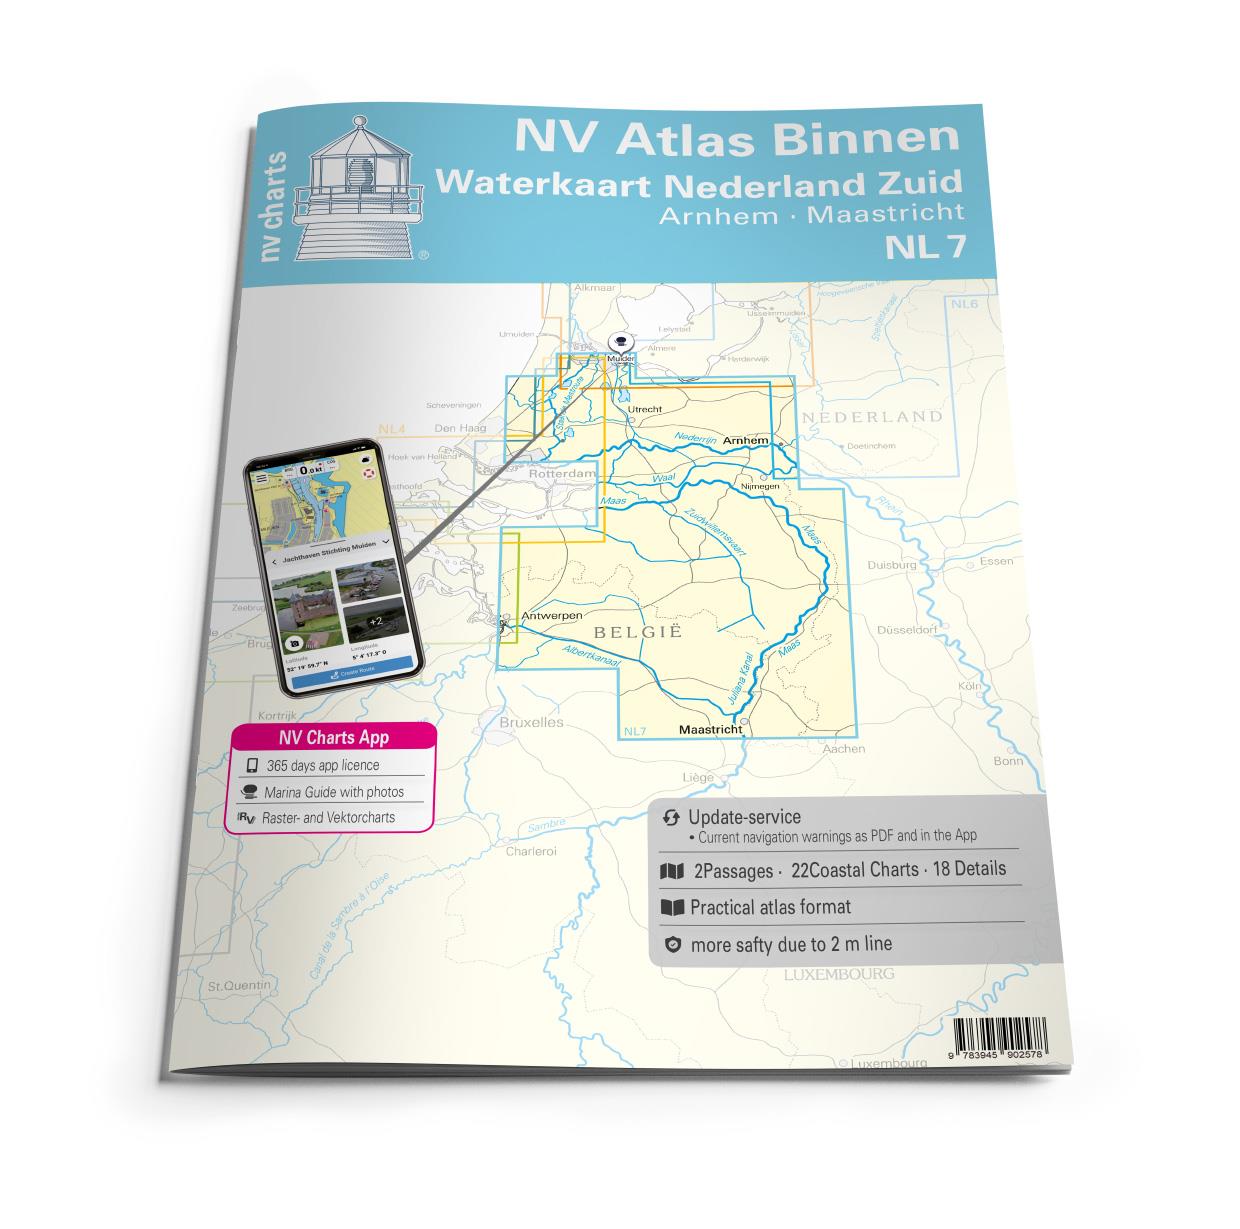 NV Atlas Binnen NL7 - Waterkaart Nederland Zuid - Arnhem - Maastricht